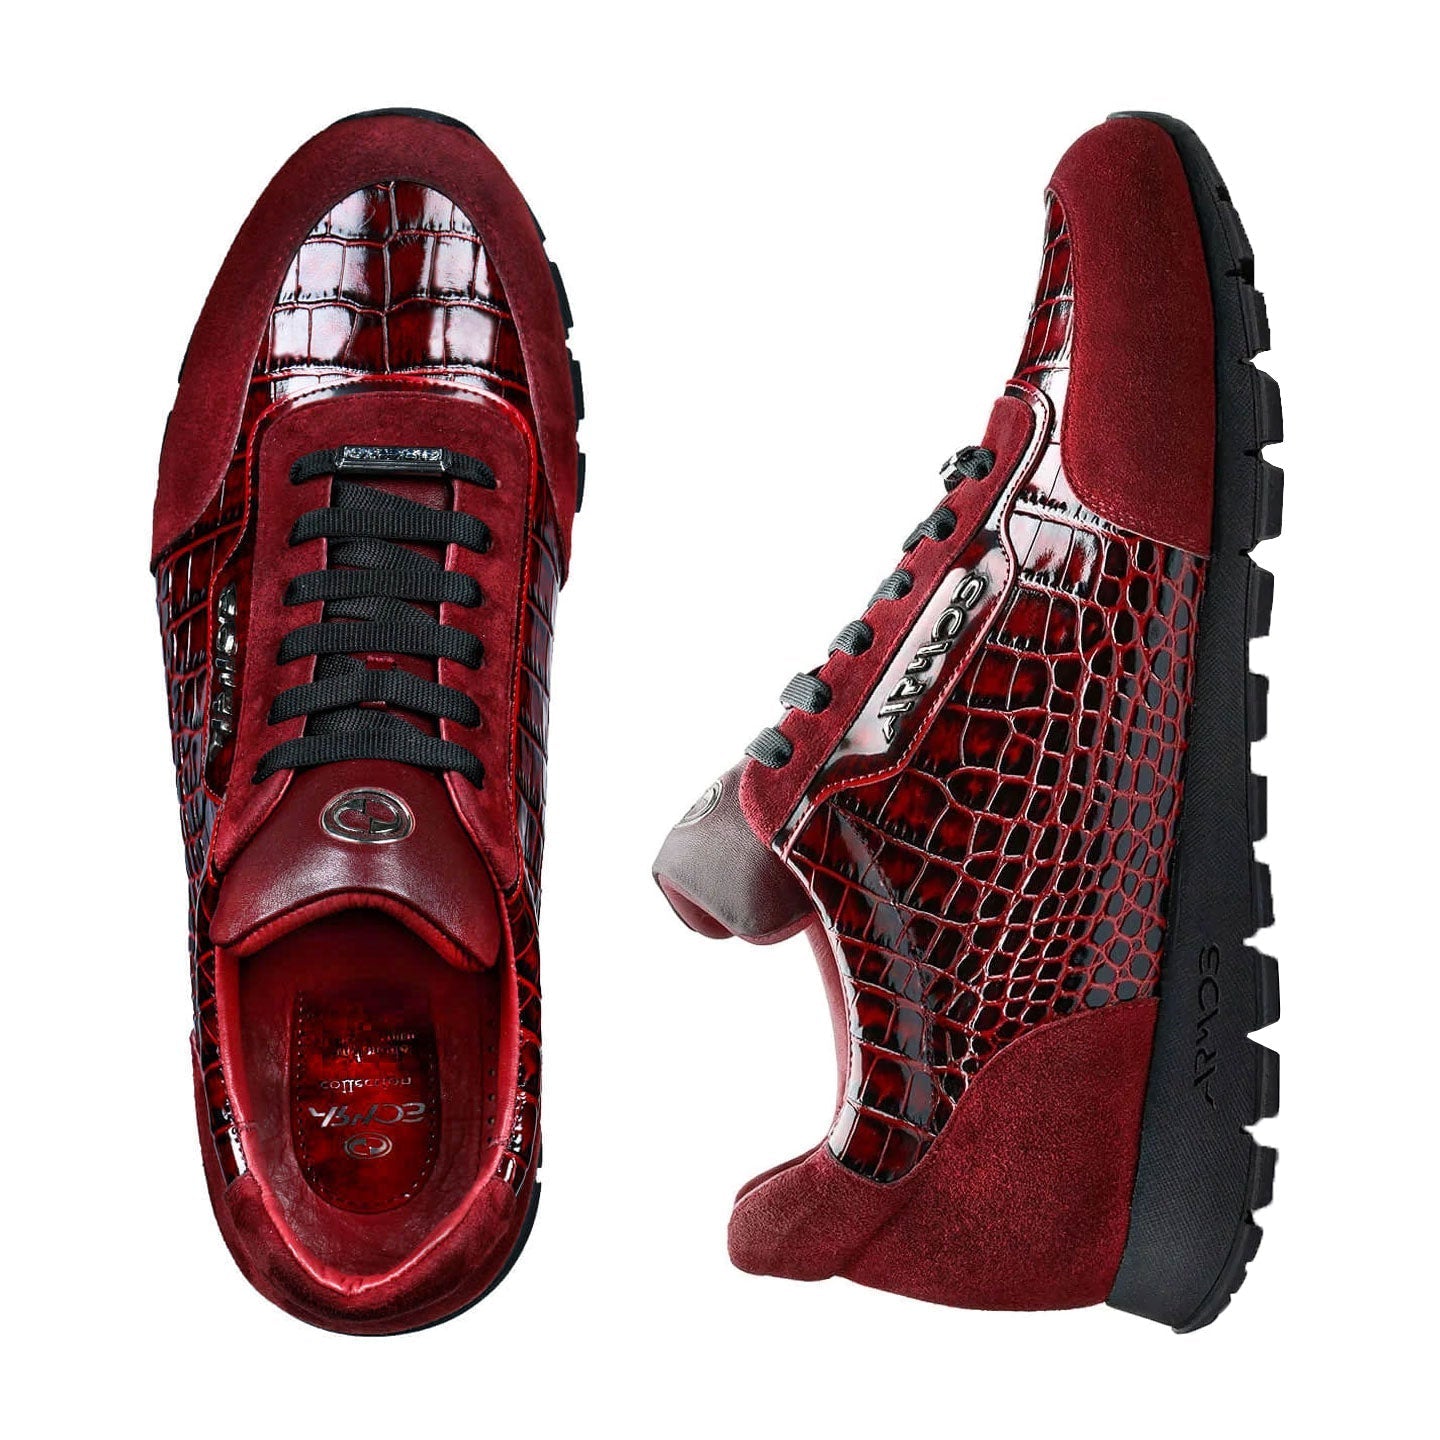 Croc-print suede sneakers